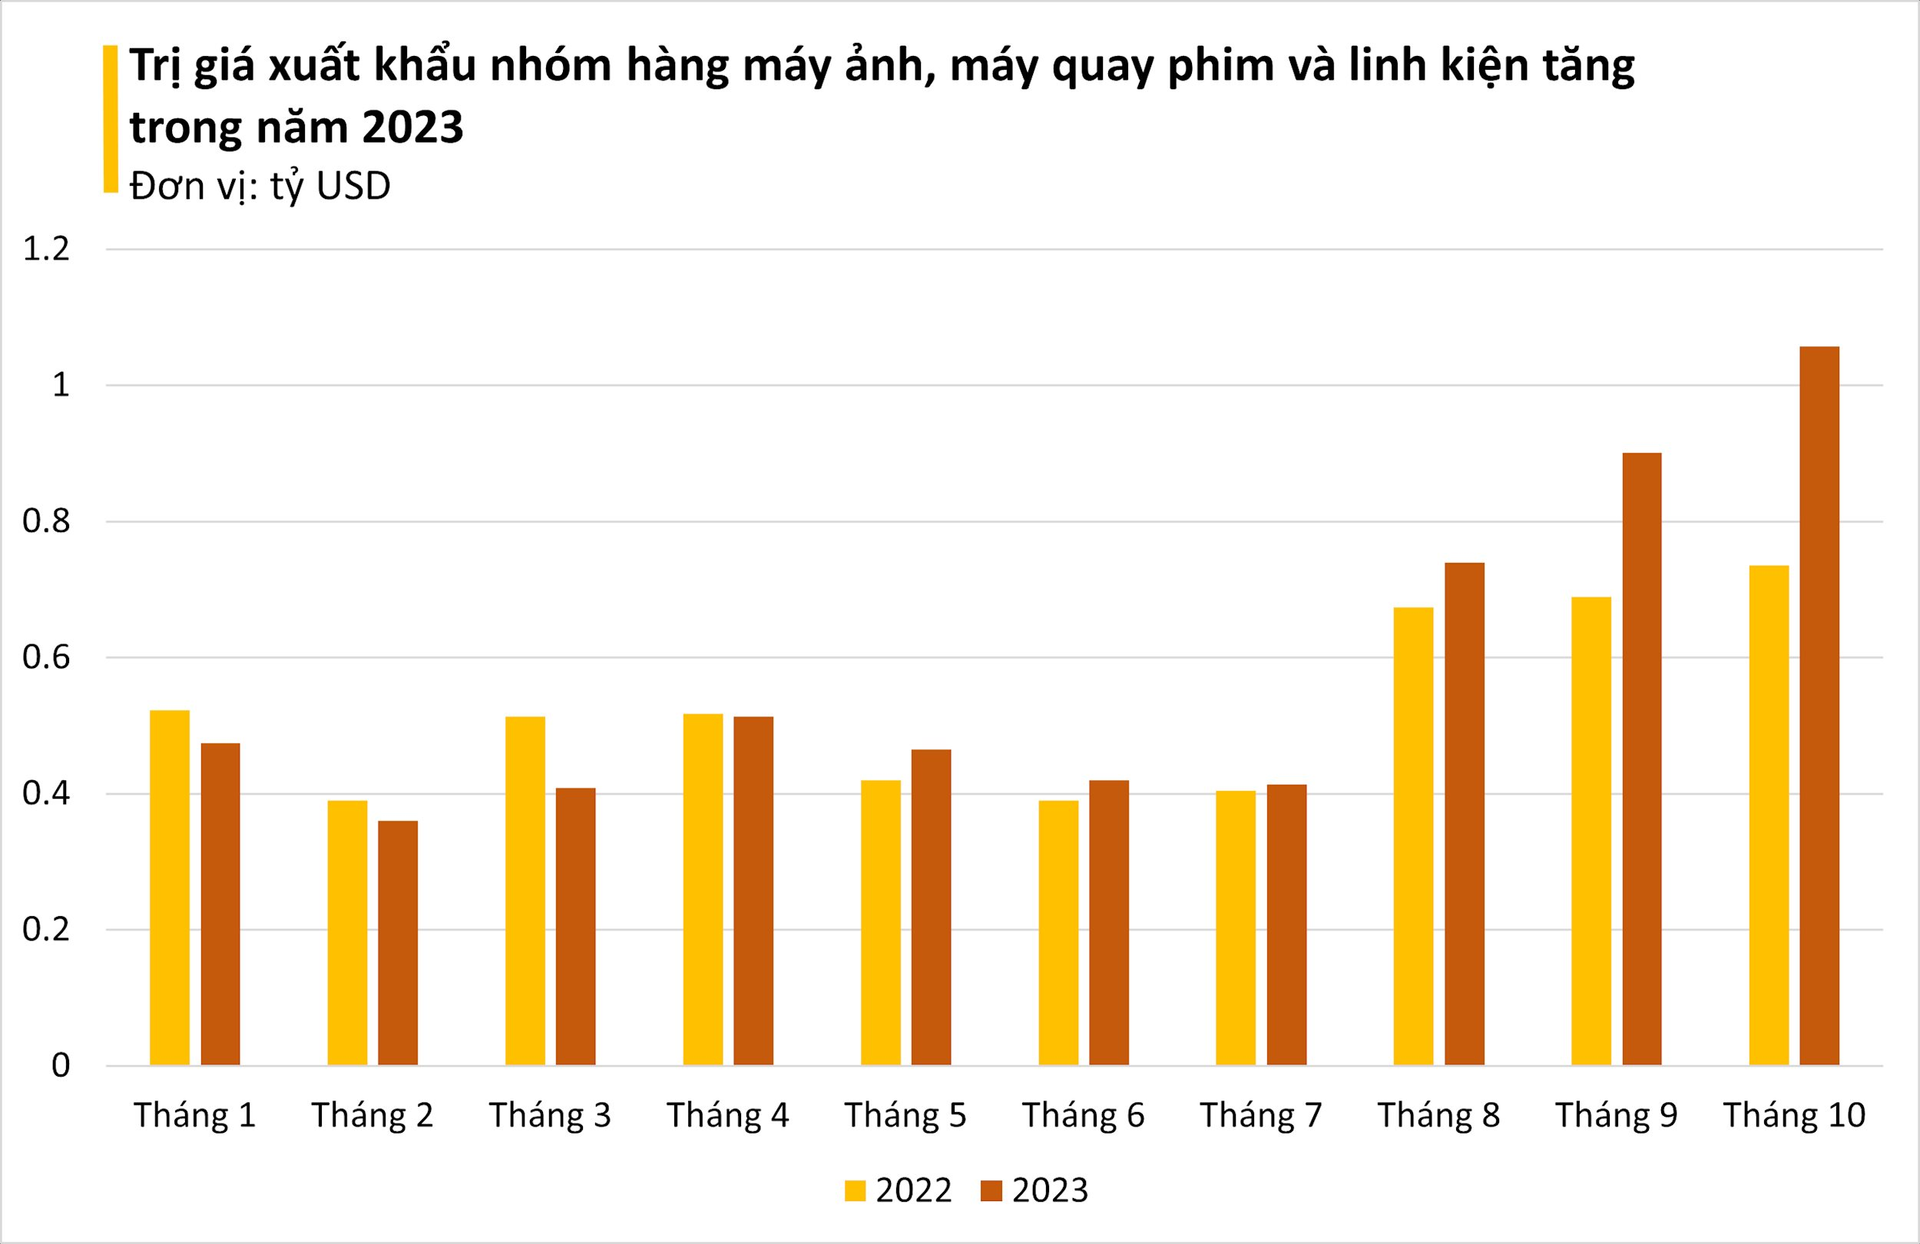 Một 'ngôi sao' của Việt Nam đang liên tục hốt bạc từ Đông sang Tây: Trung Quốc là khách ruột nhập khẩu, bỏ túi gần 6 tỷ USD trong 10 tháng qua - Ảnh 1.